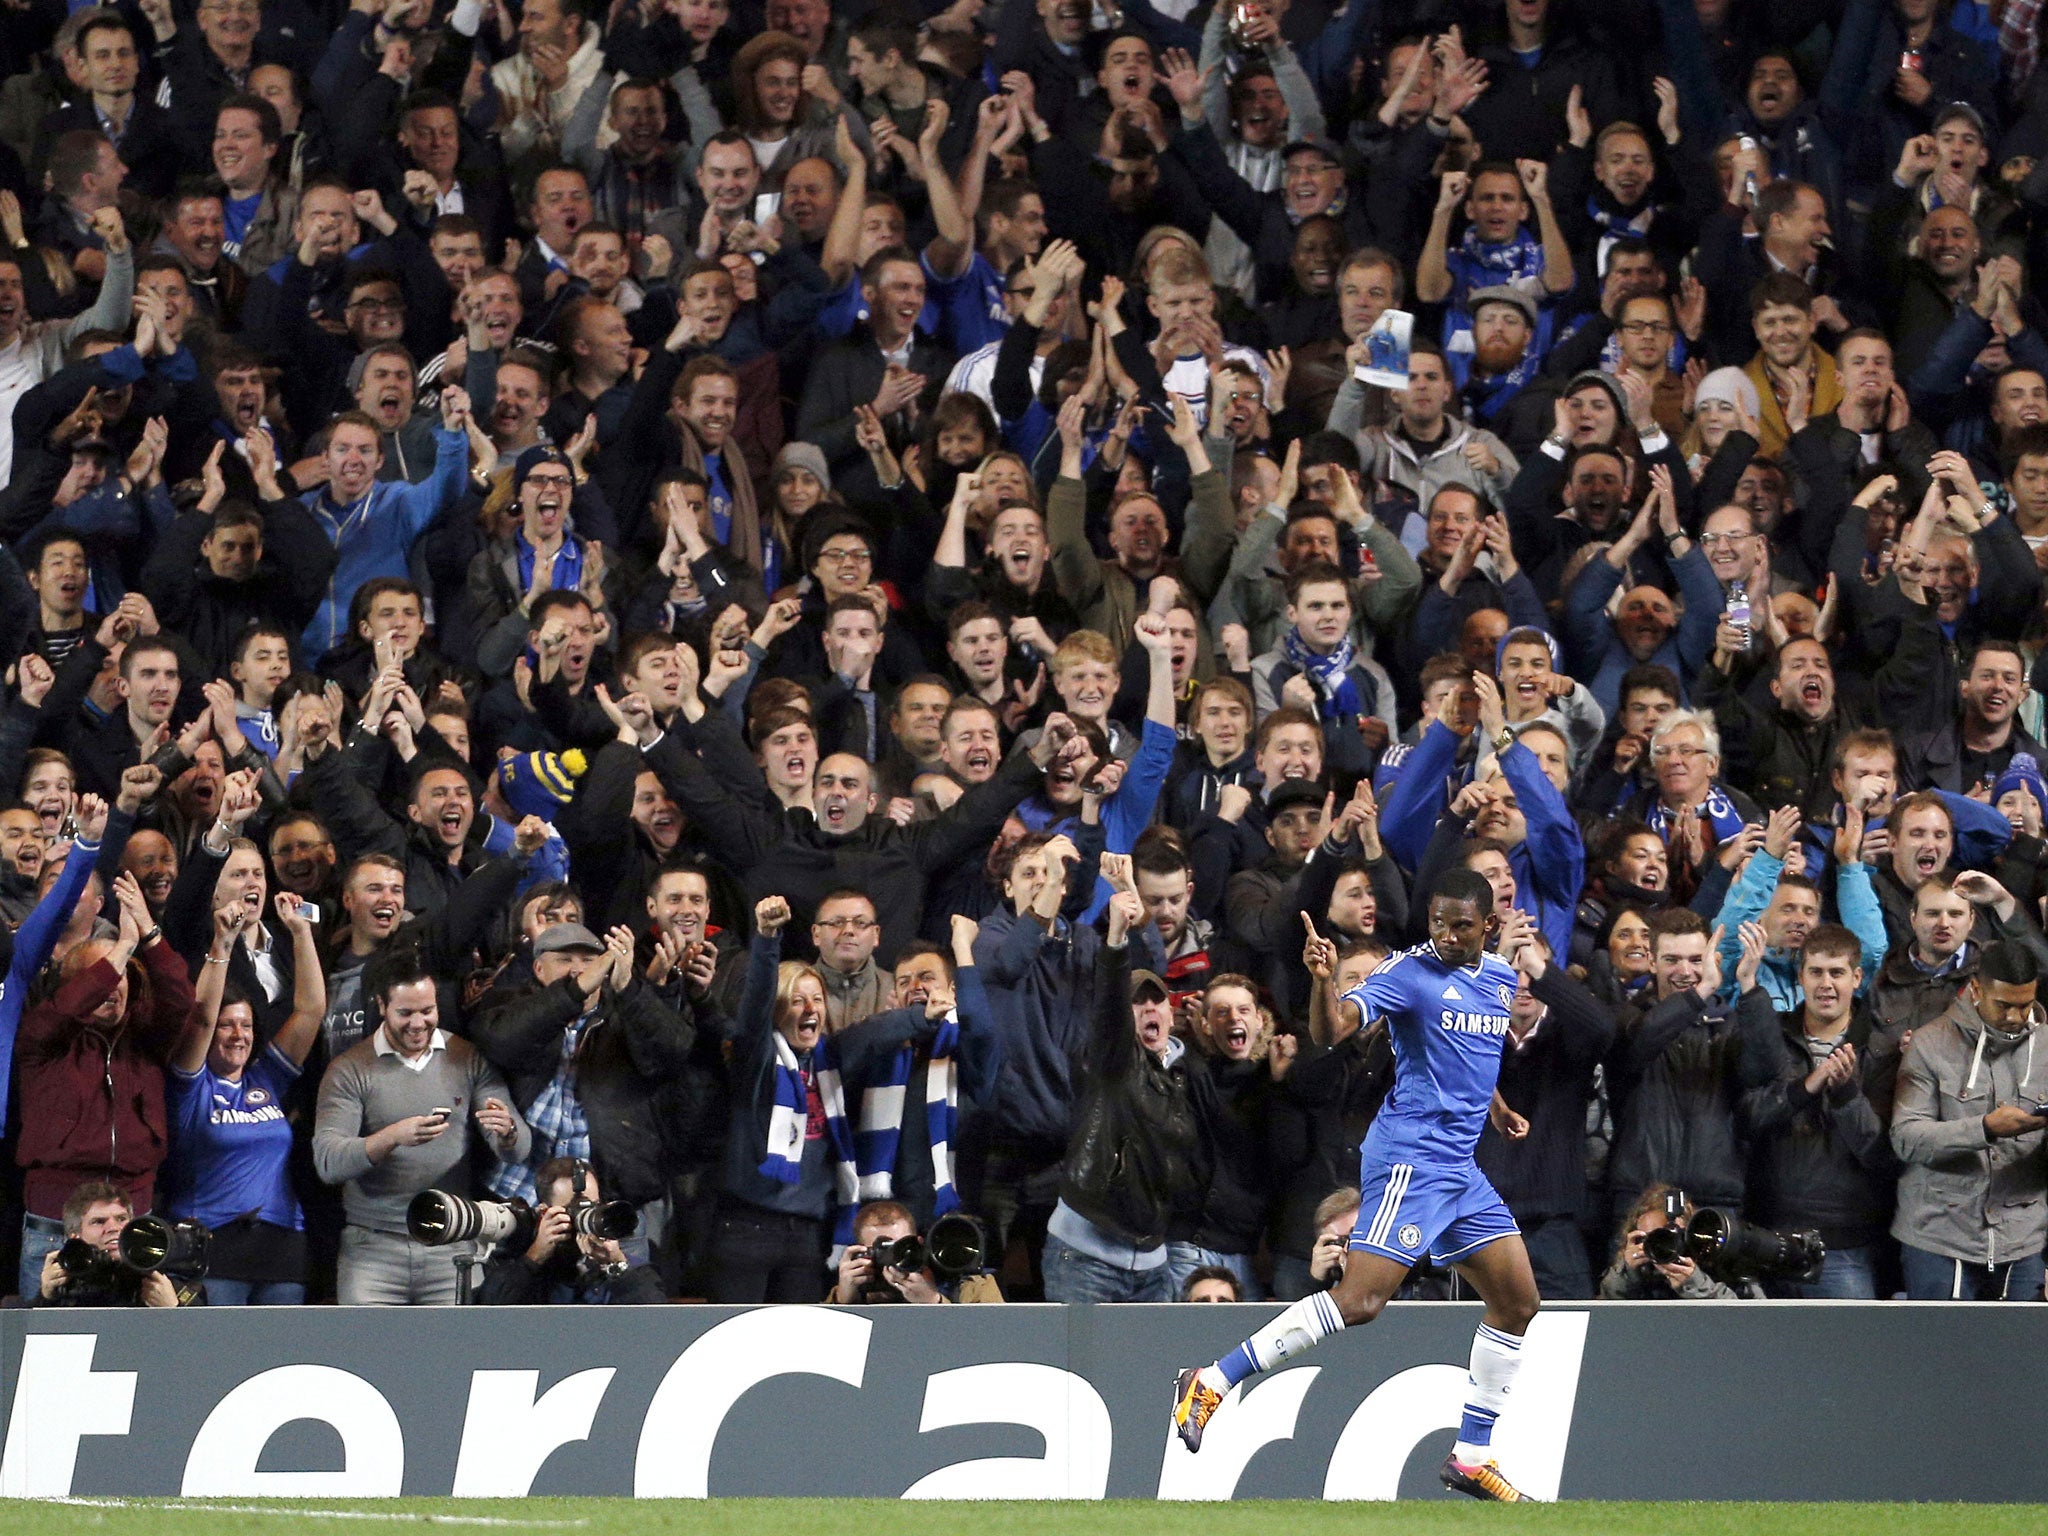 Chelsea striker Samuel Eto'o celebrates after scoring against Schalke